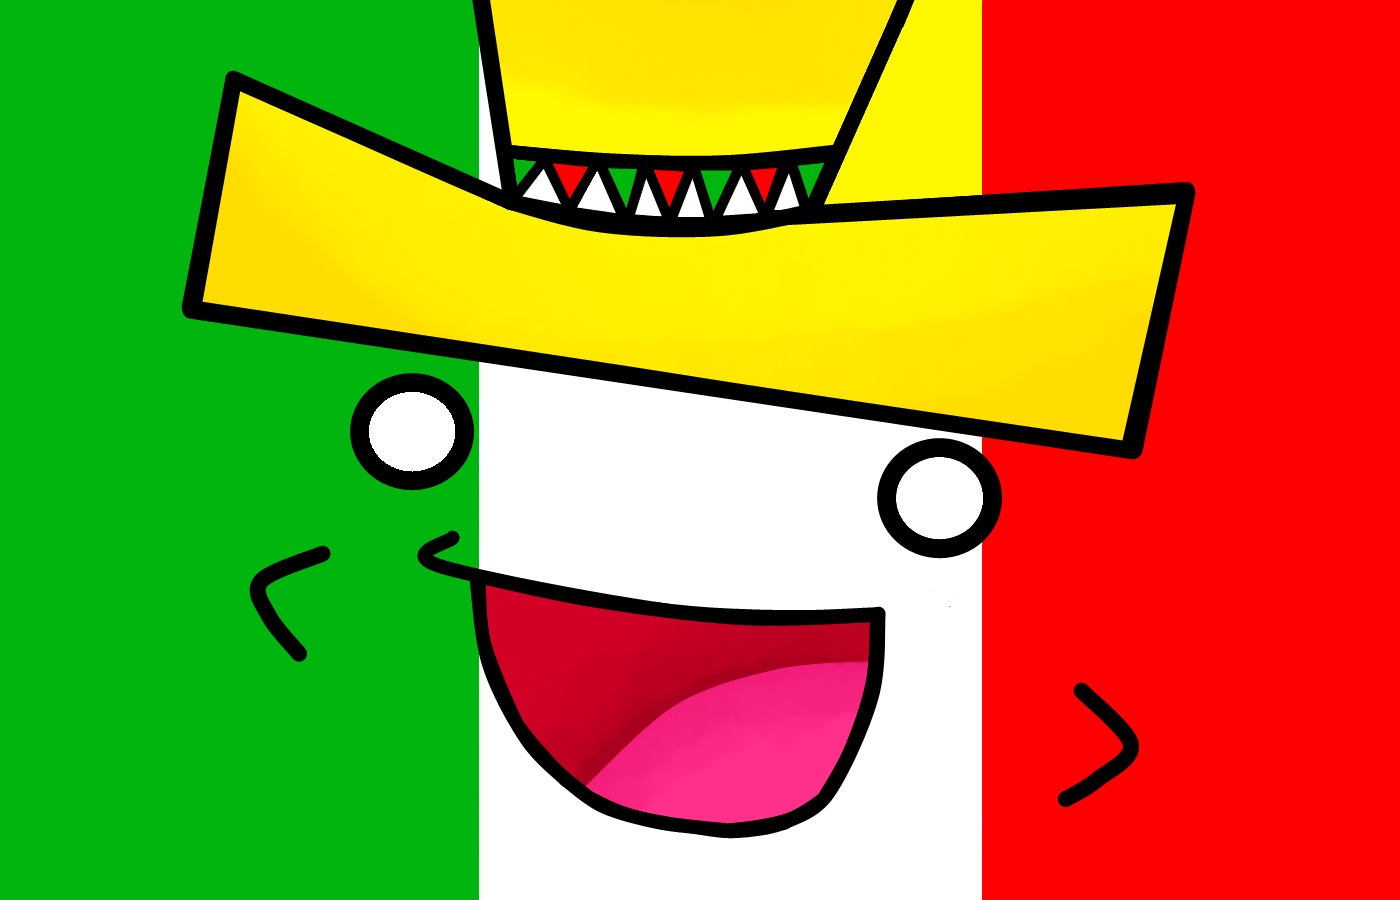 Mexican Smiley Face